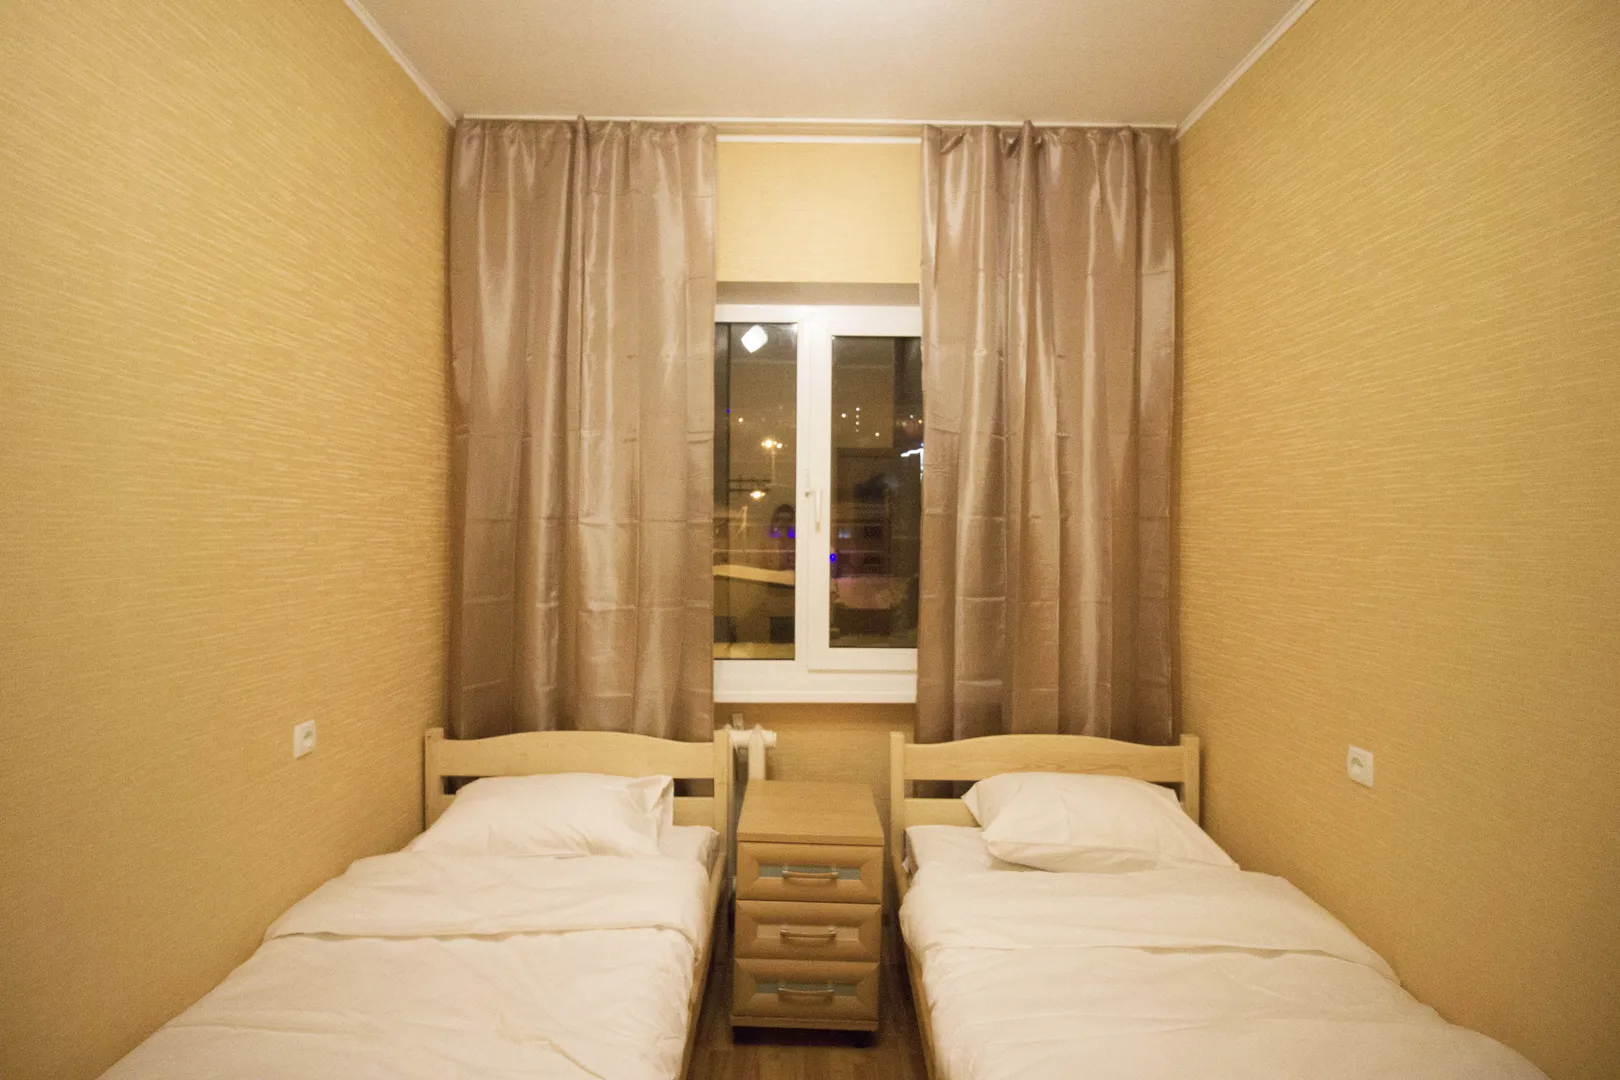 Две кровати легко трансформируются в широкую двуспальную кровать.